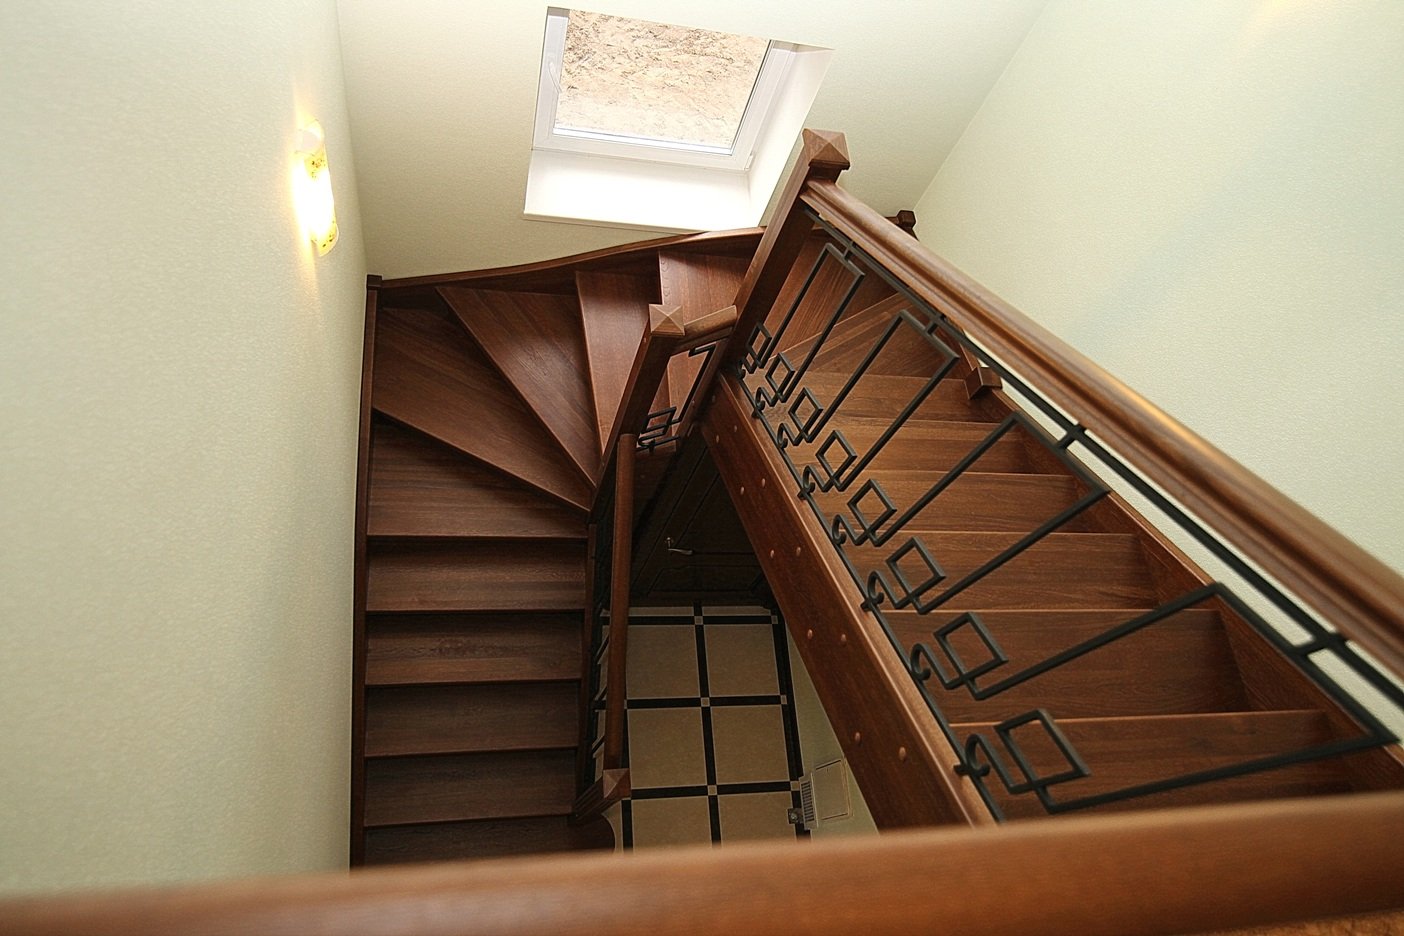 фото забежных деревянных лестниц